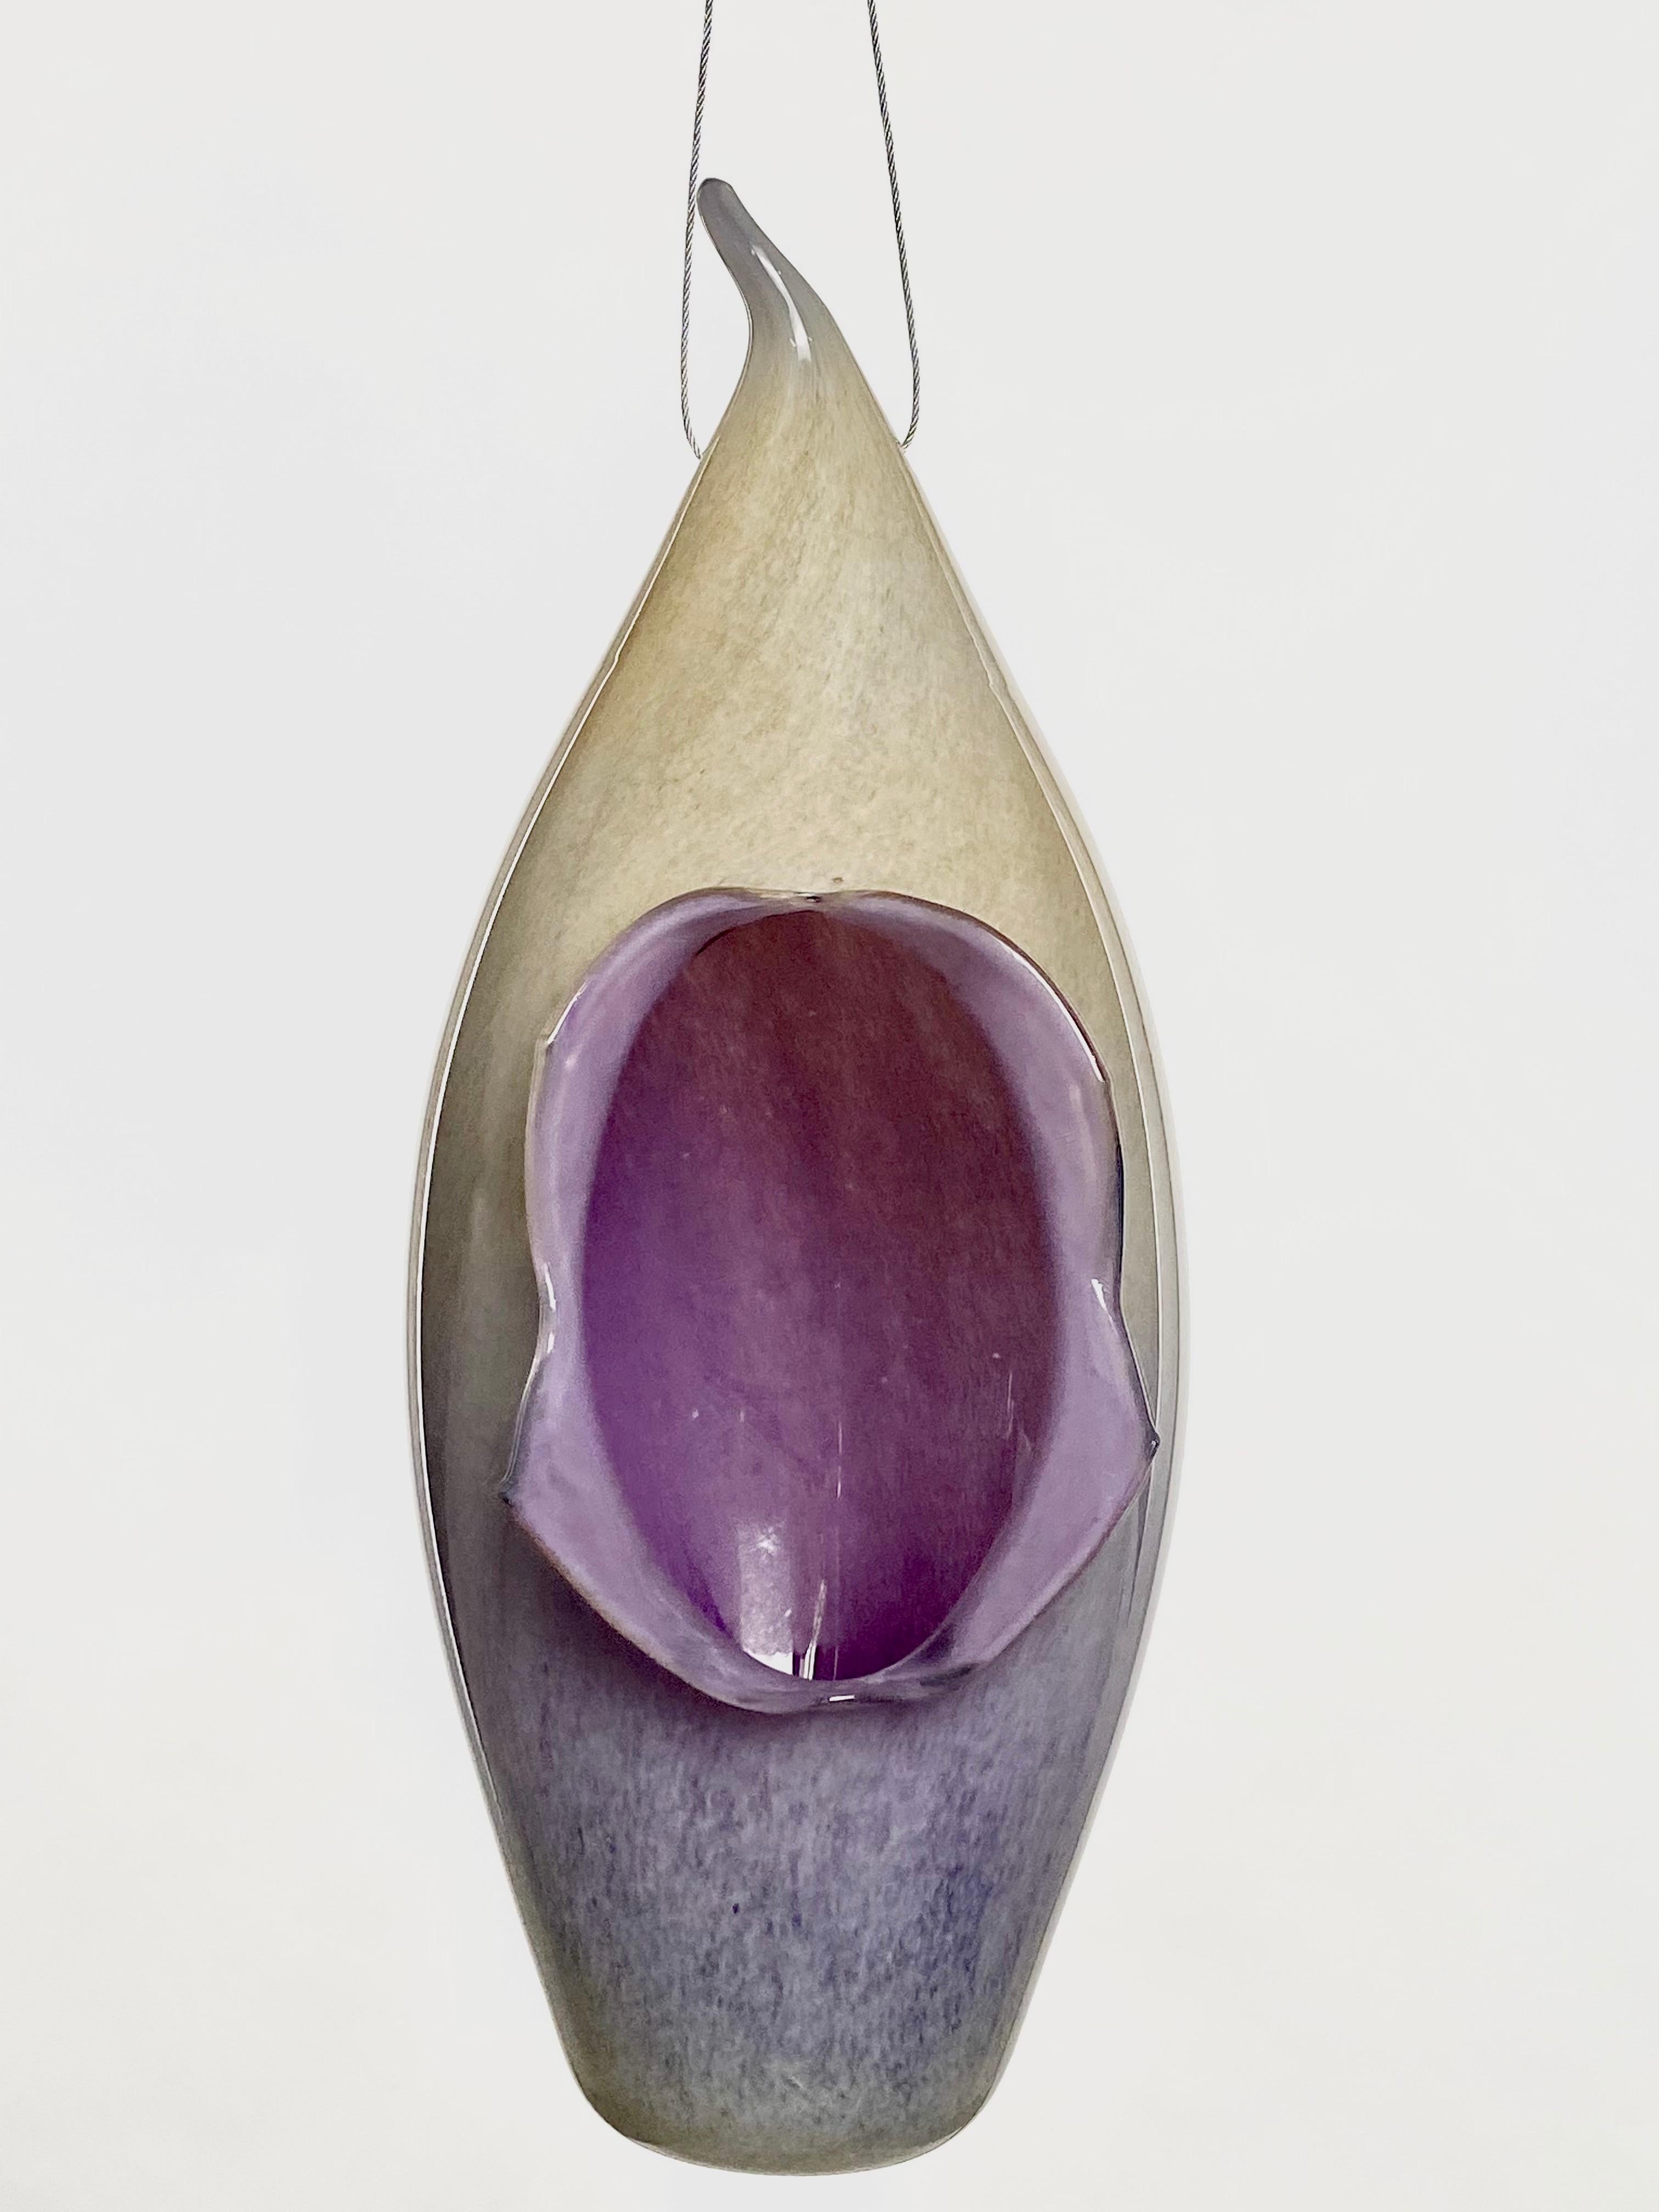 Il s'agit d'une nouvelle œuvre de Mattia Biagi dans un verre.
Cette lampe sculpturale peut être utilisée comme lampe de table ou suspendue.
le fil de 16 pieds recouvert de tissu robuste de couleur nickel permet de multiples possibilités de